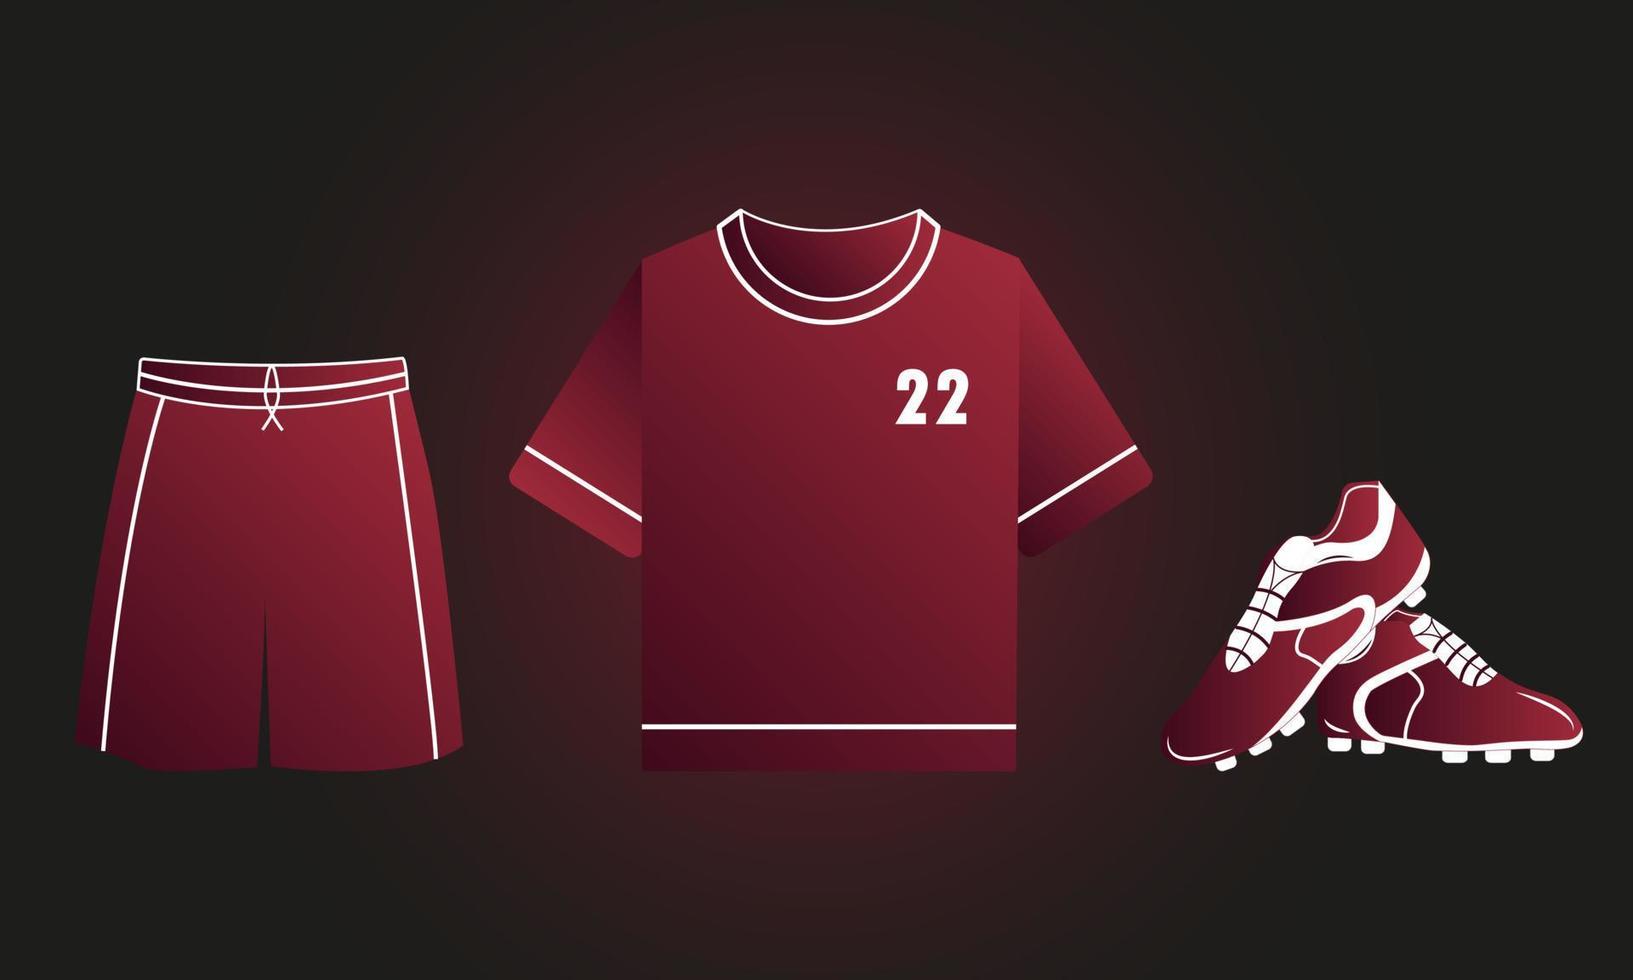 Atributos futbolísticos del campeonato. camiseta, shorts, botas. artículos de fútbol al estilo del campeonato mundial. vector